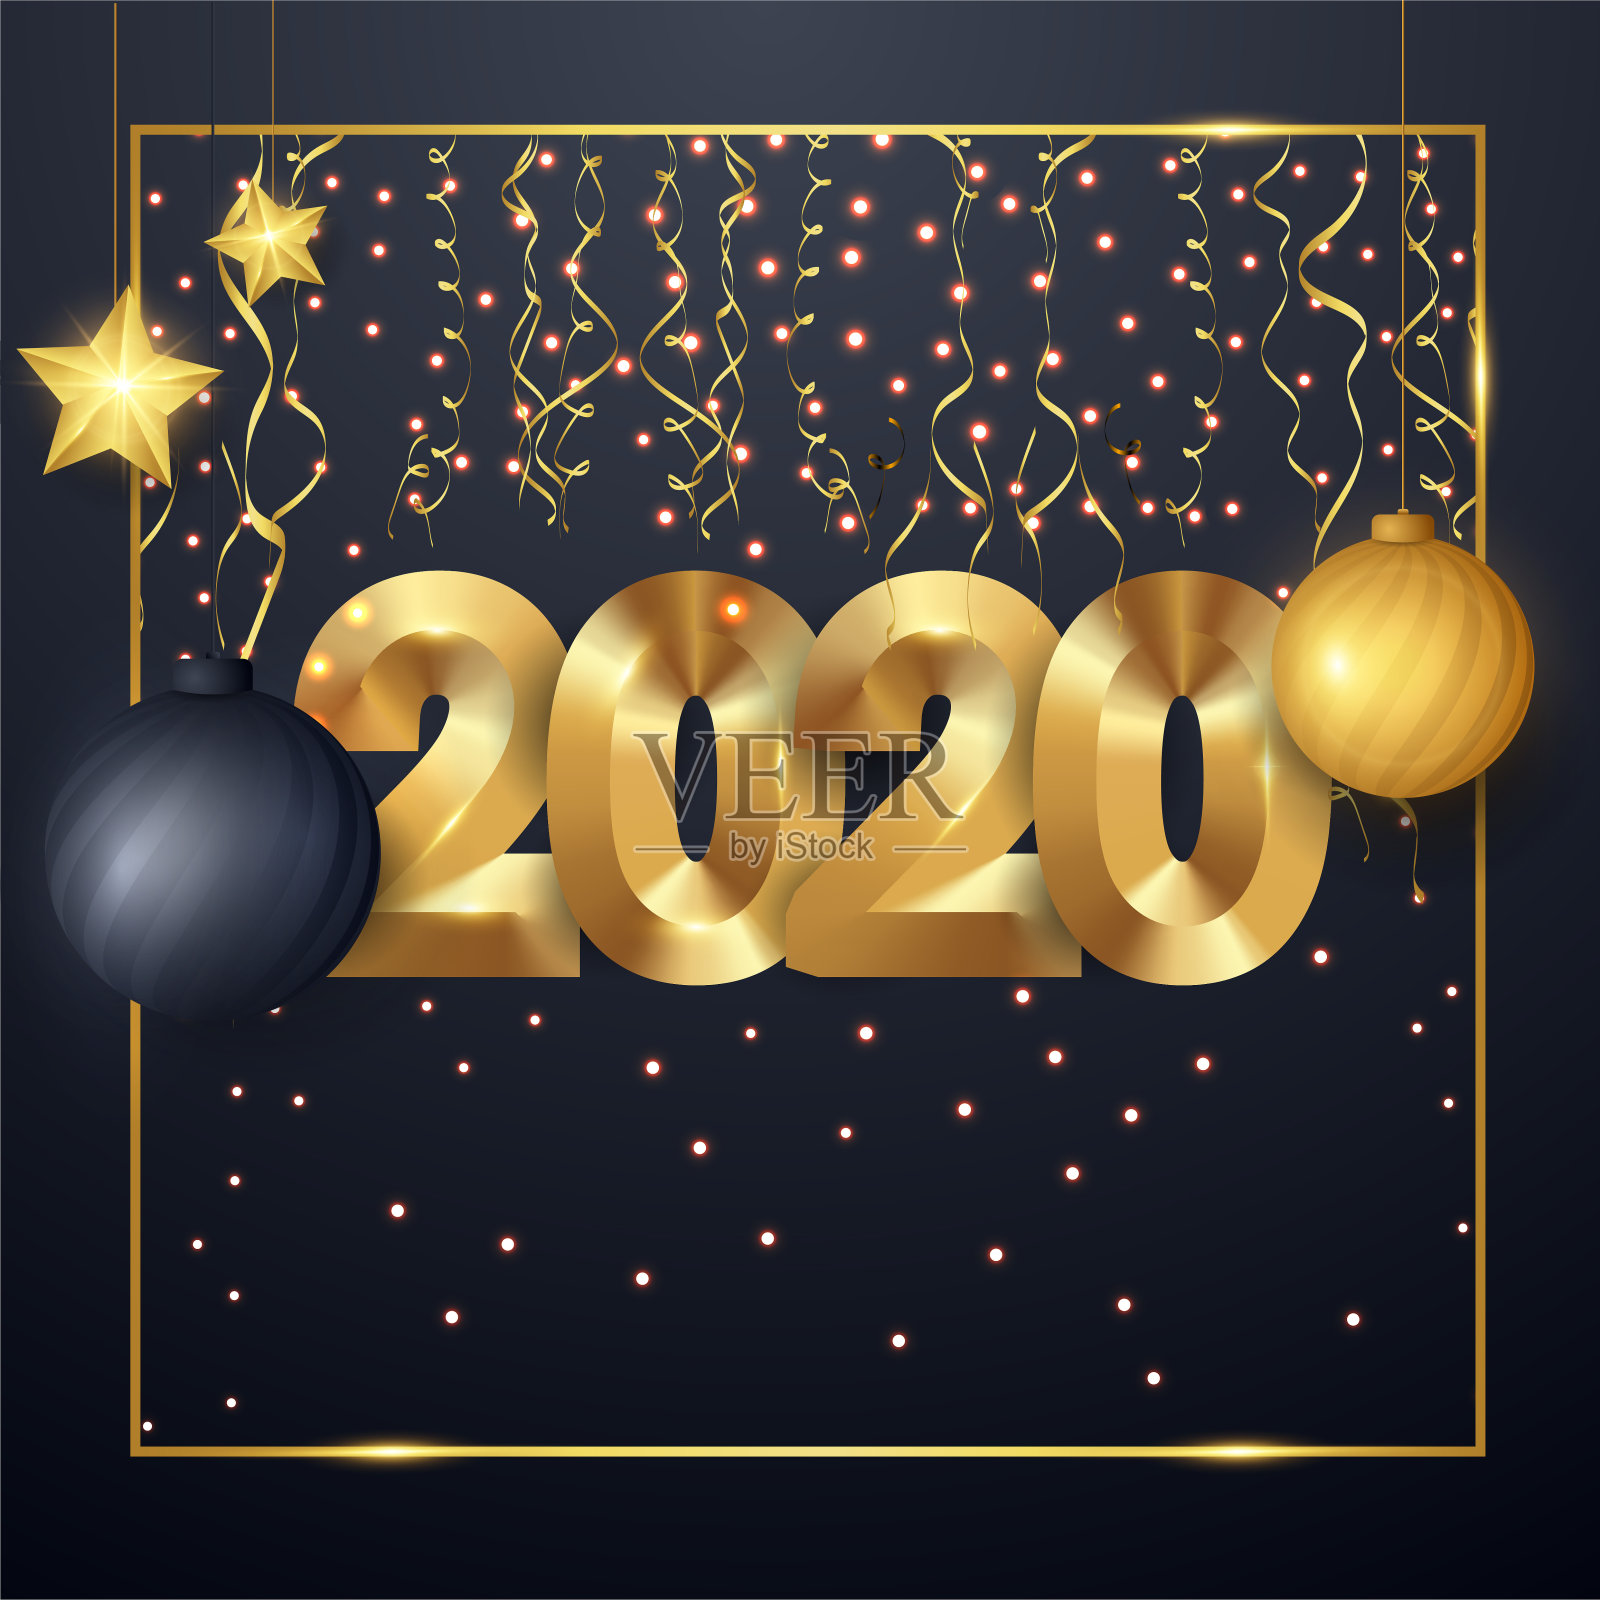 新年快乐2020冬季节日贺卡设计模板。晚会海报、横幅或邀请金闪闪的星星、五彩纸屑闪闪发光的装饰。矢量背景与金色礼物弓插画图片素材